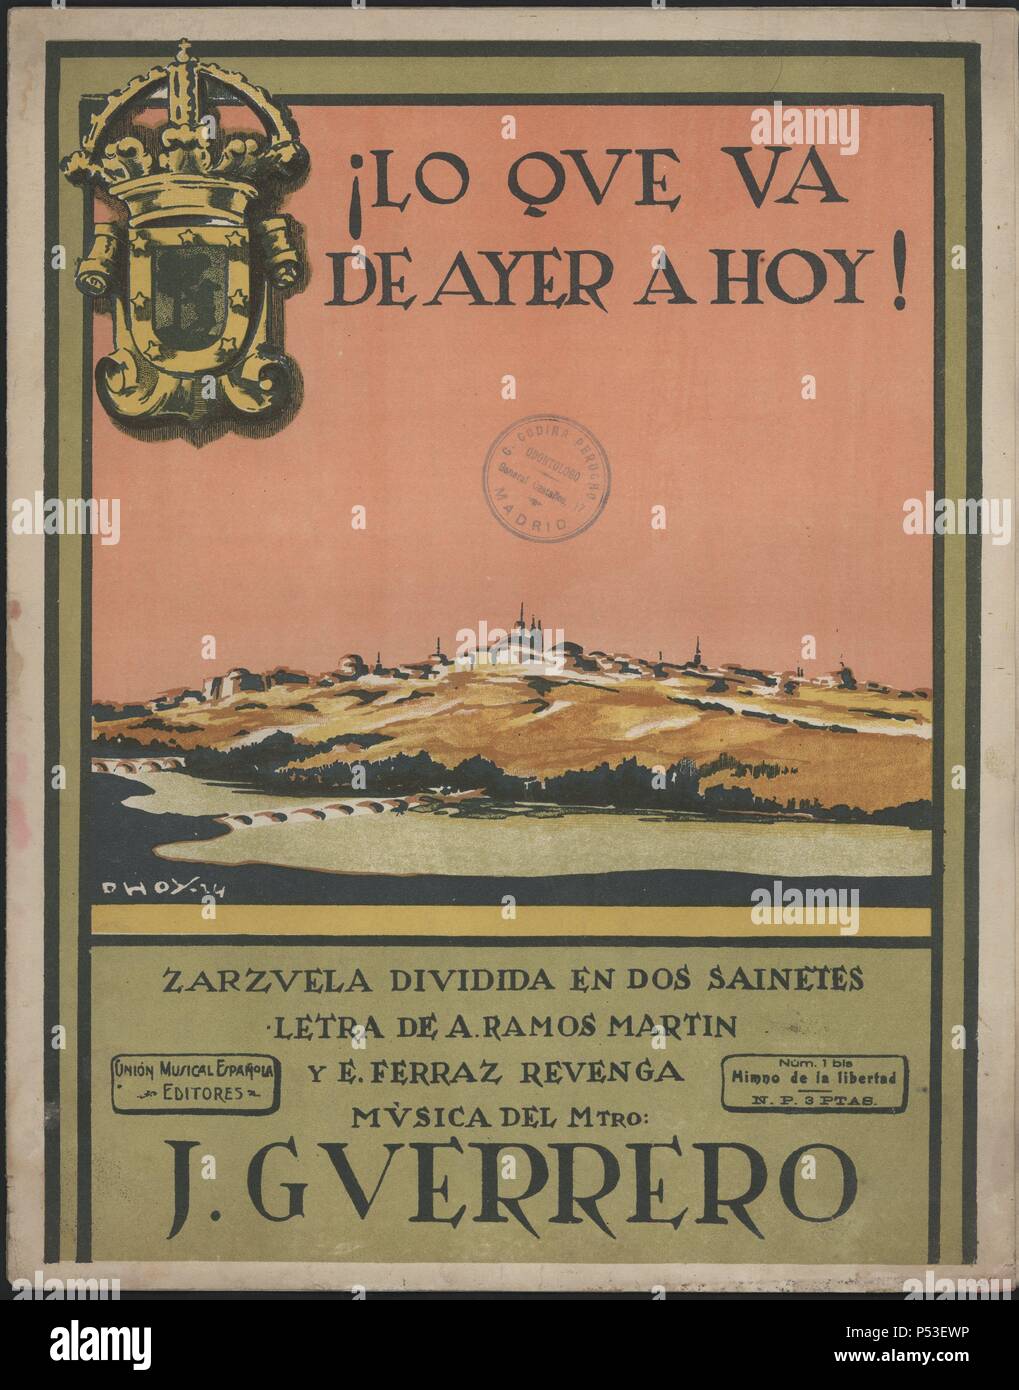 España. Portada de la partitura de la zarzuela ¡Lo que va de ayer a hoy!, del maestro Jacinto Guerrero. Editada en Madrid en 1924. Stock Photo